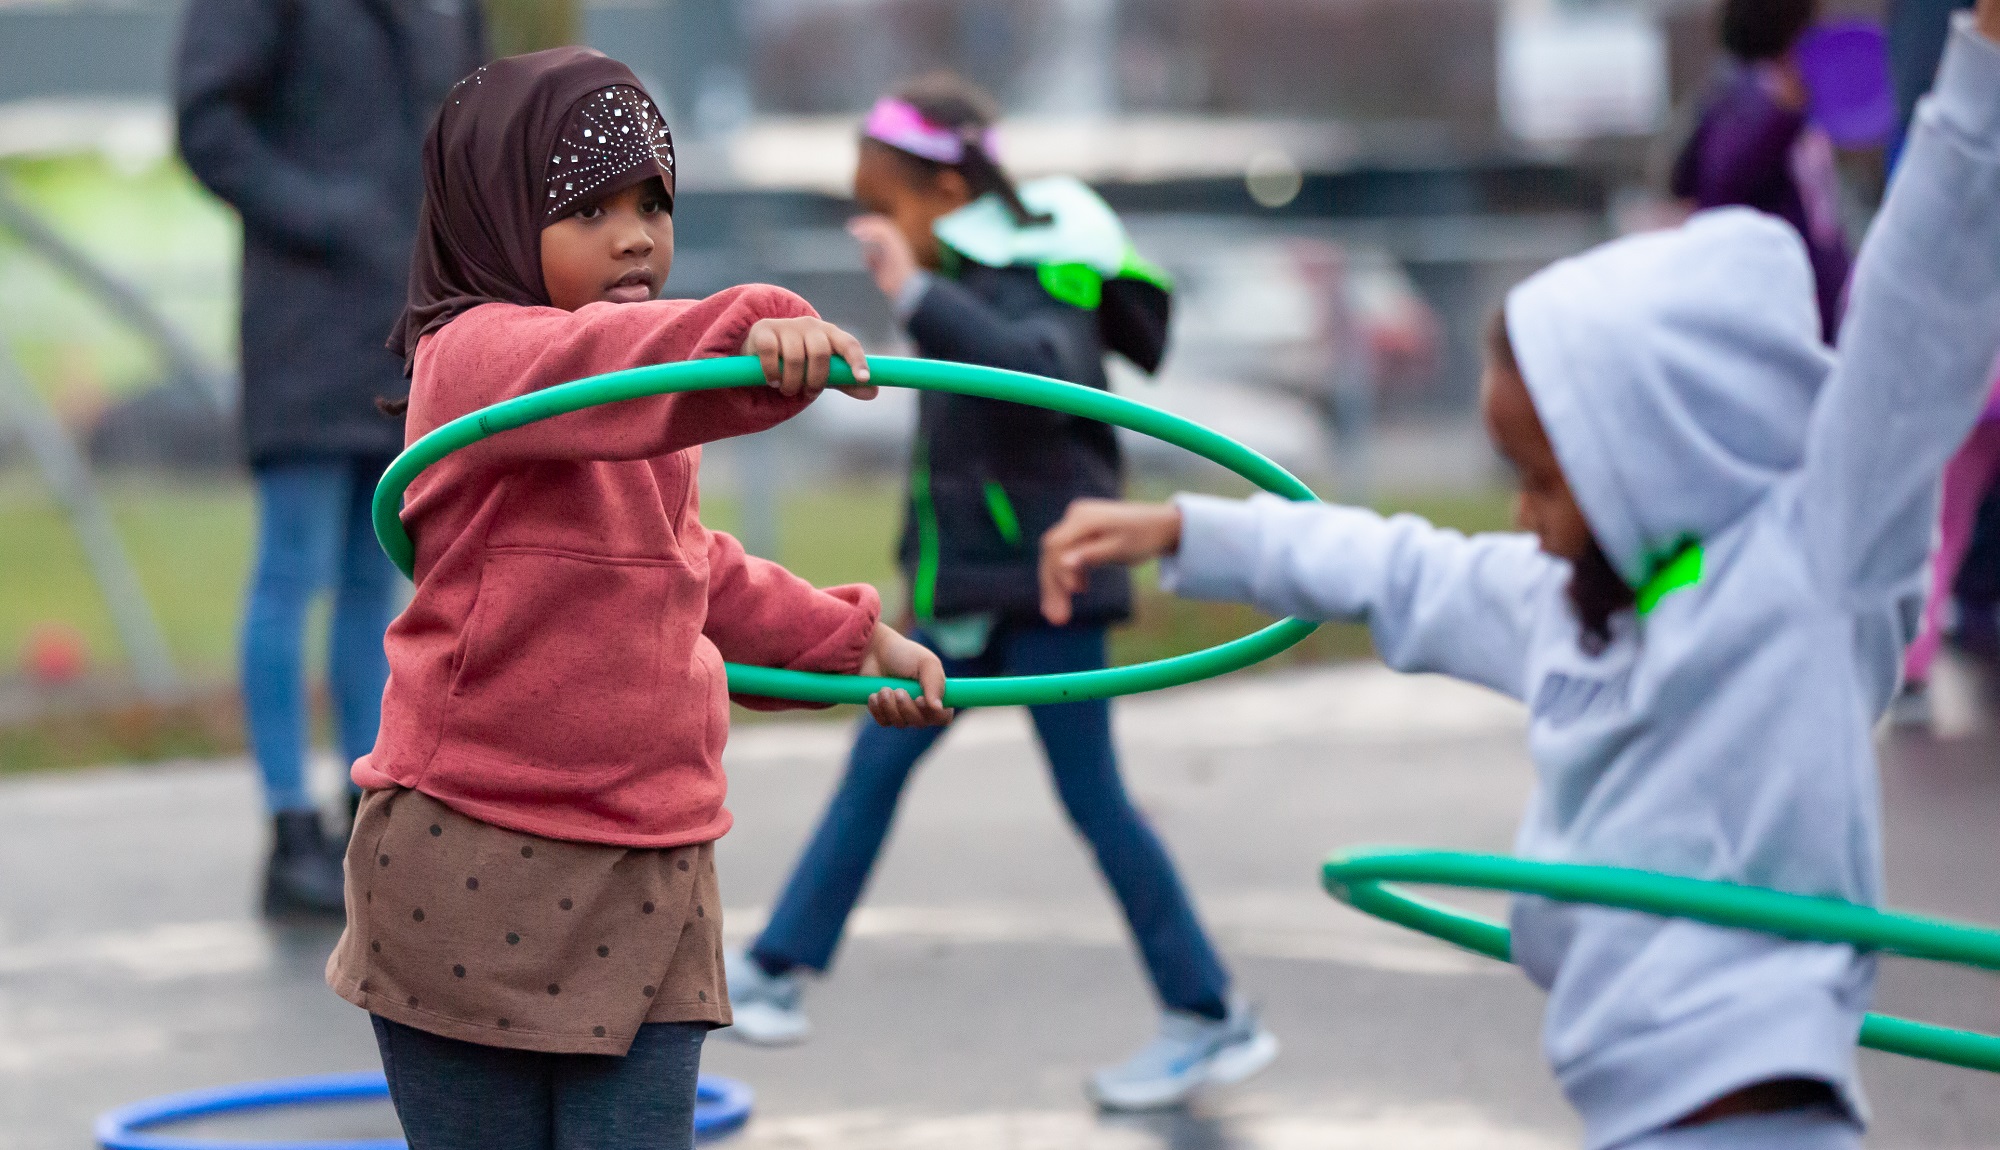 Students play with hula hoops at recess